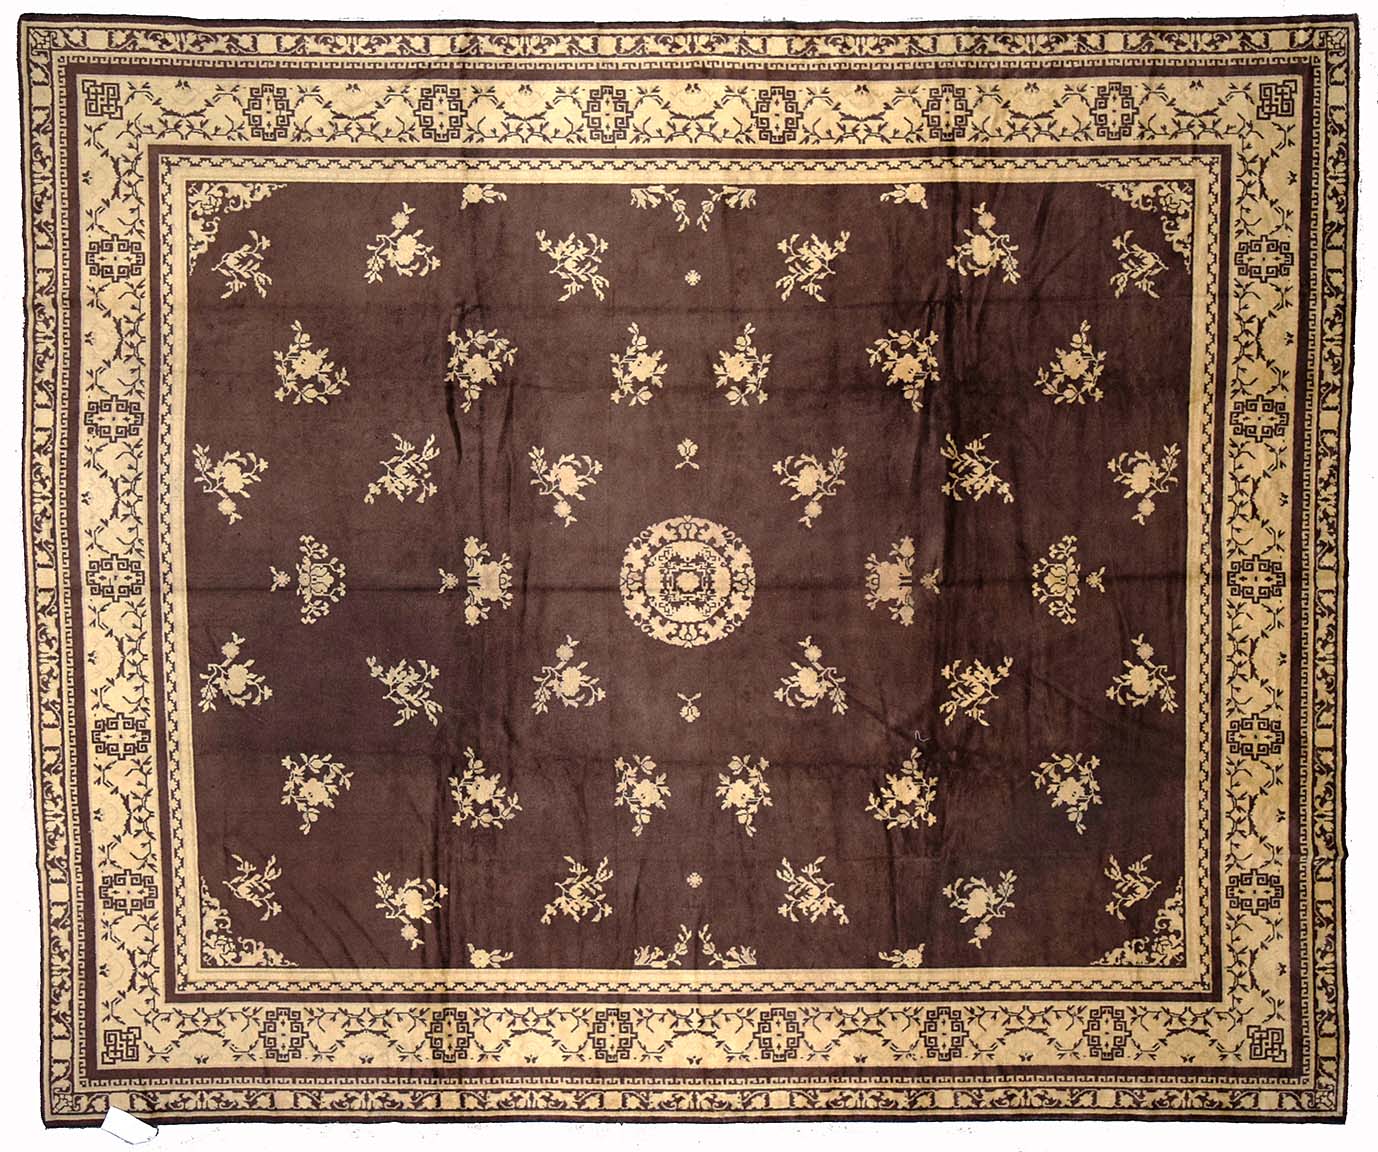 Antique mongolian Carpet - # 53727